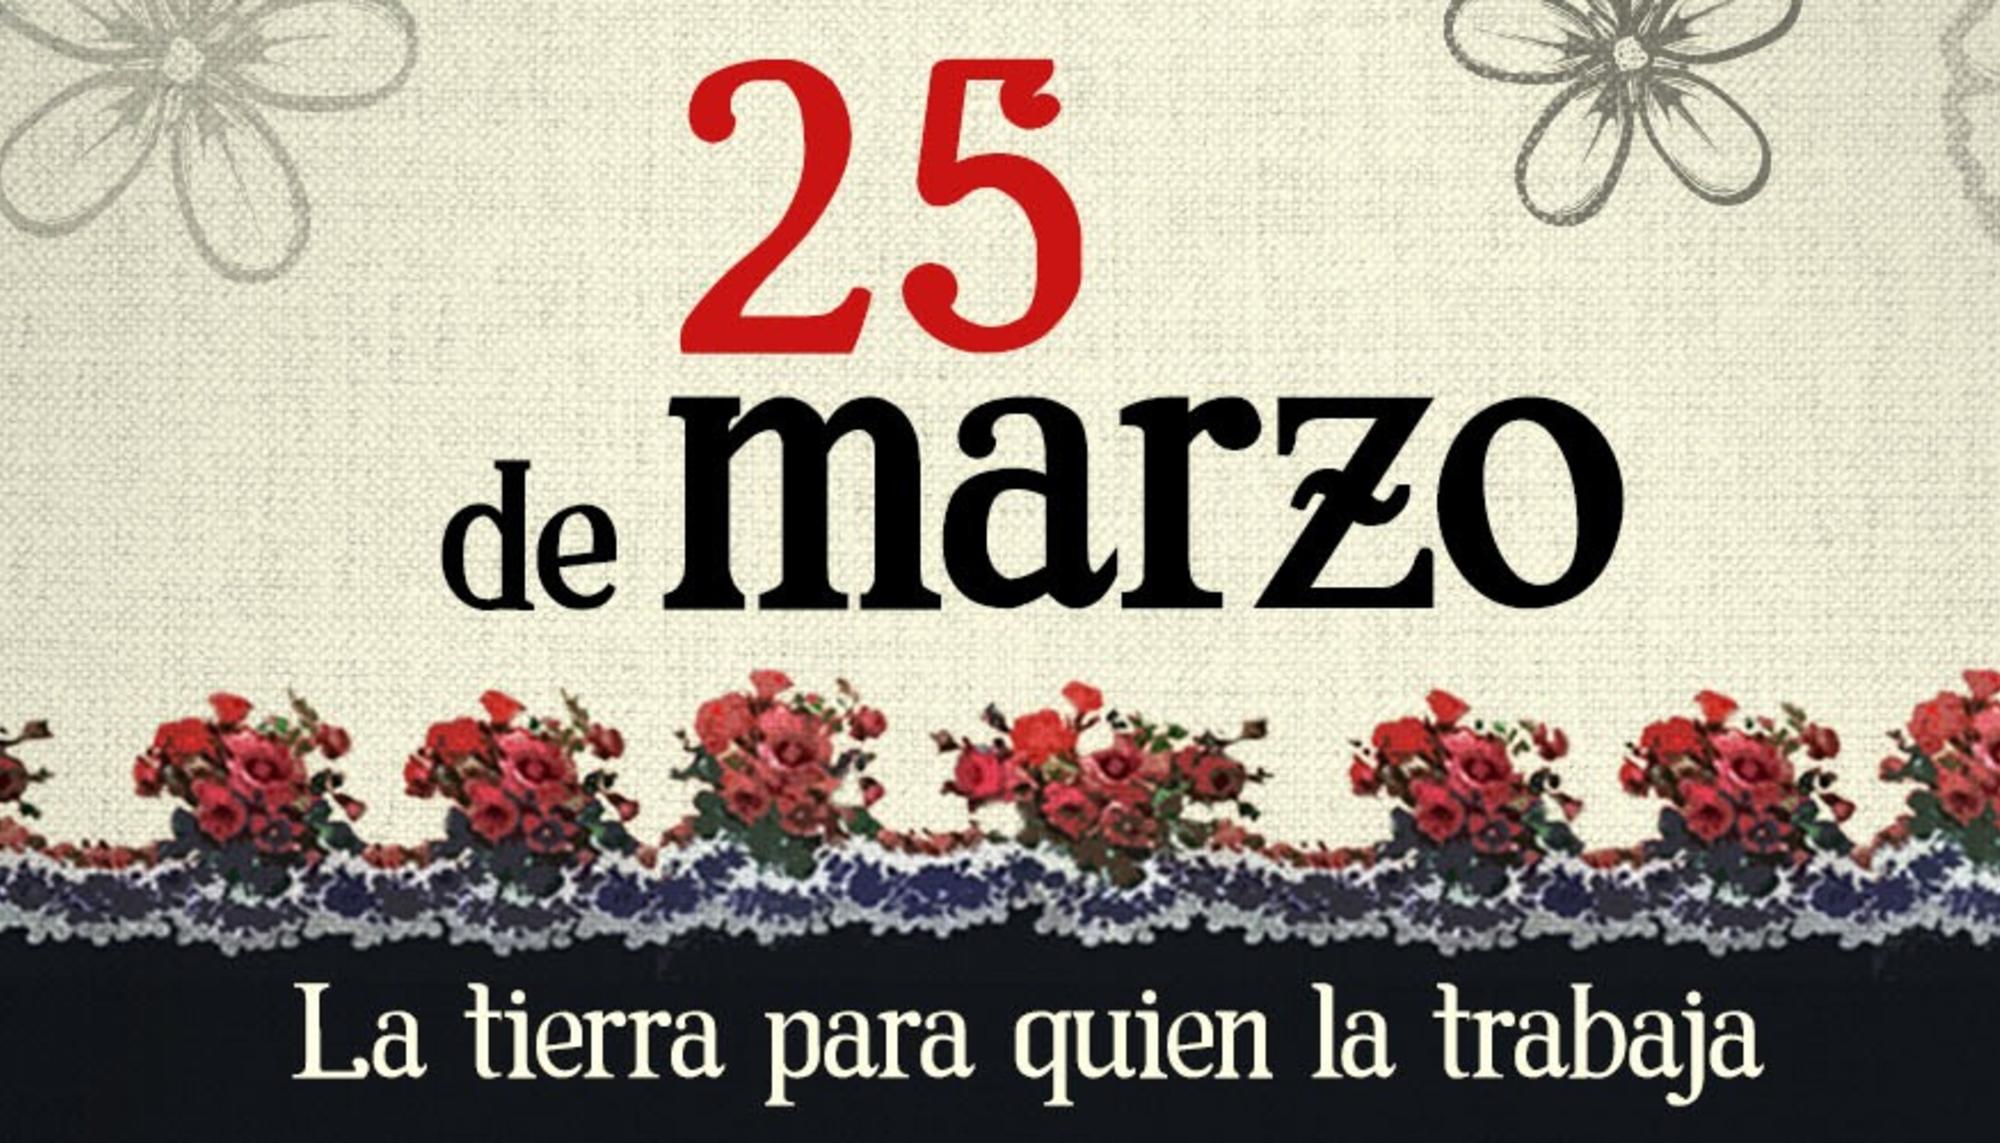 25 de marzo Extremadura